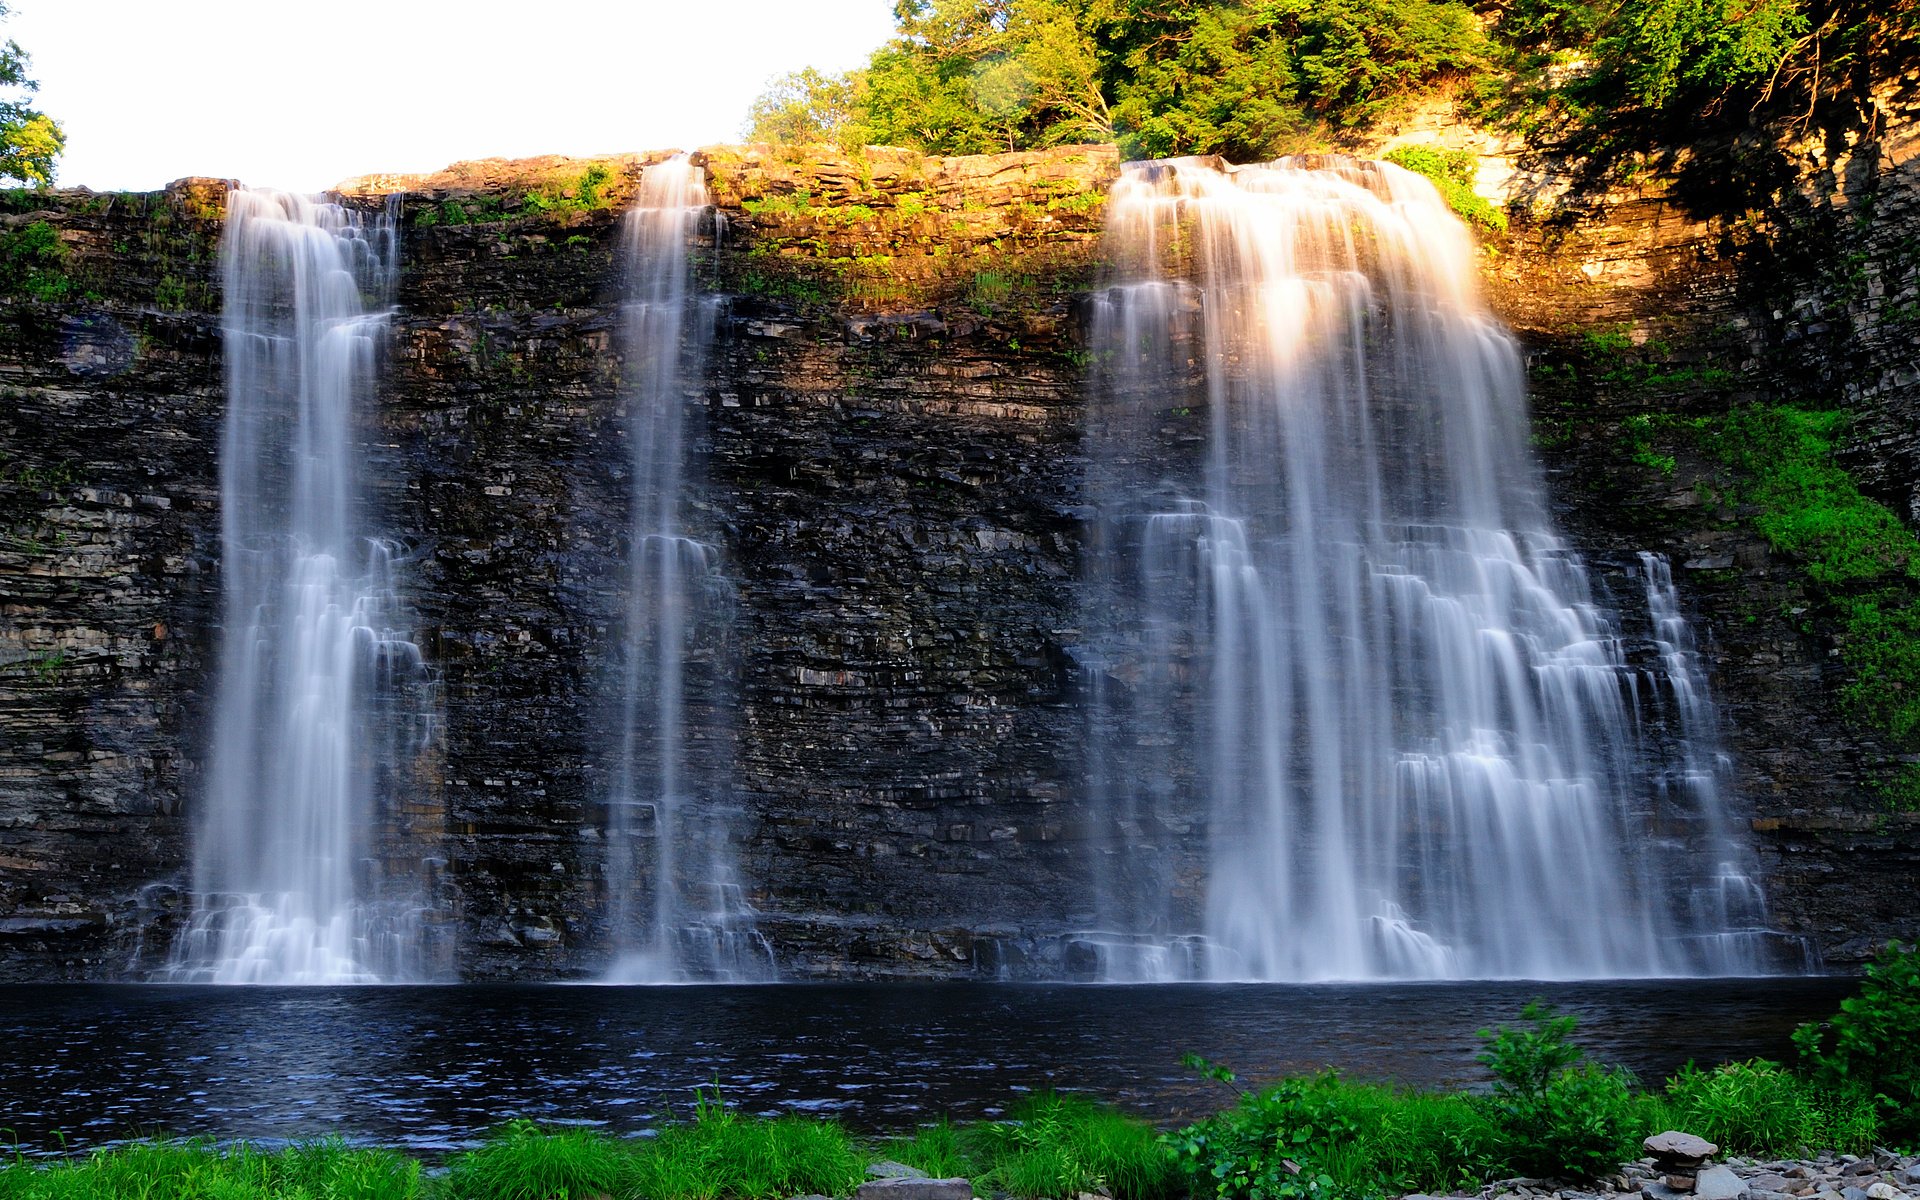 Обои на телефон живой водопад. Хайфорс водопад. Красивые водопады. Изображение водопада. Пейзаж водопад.